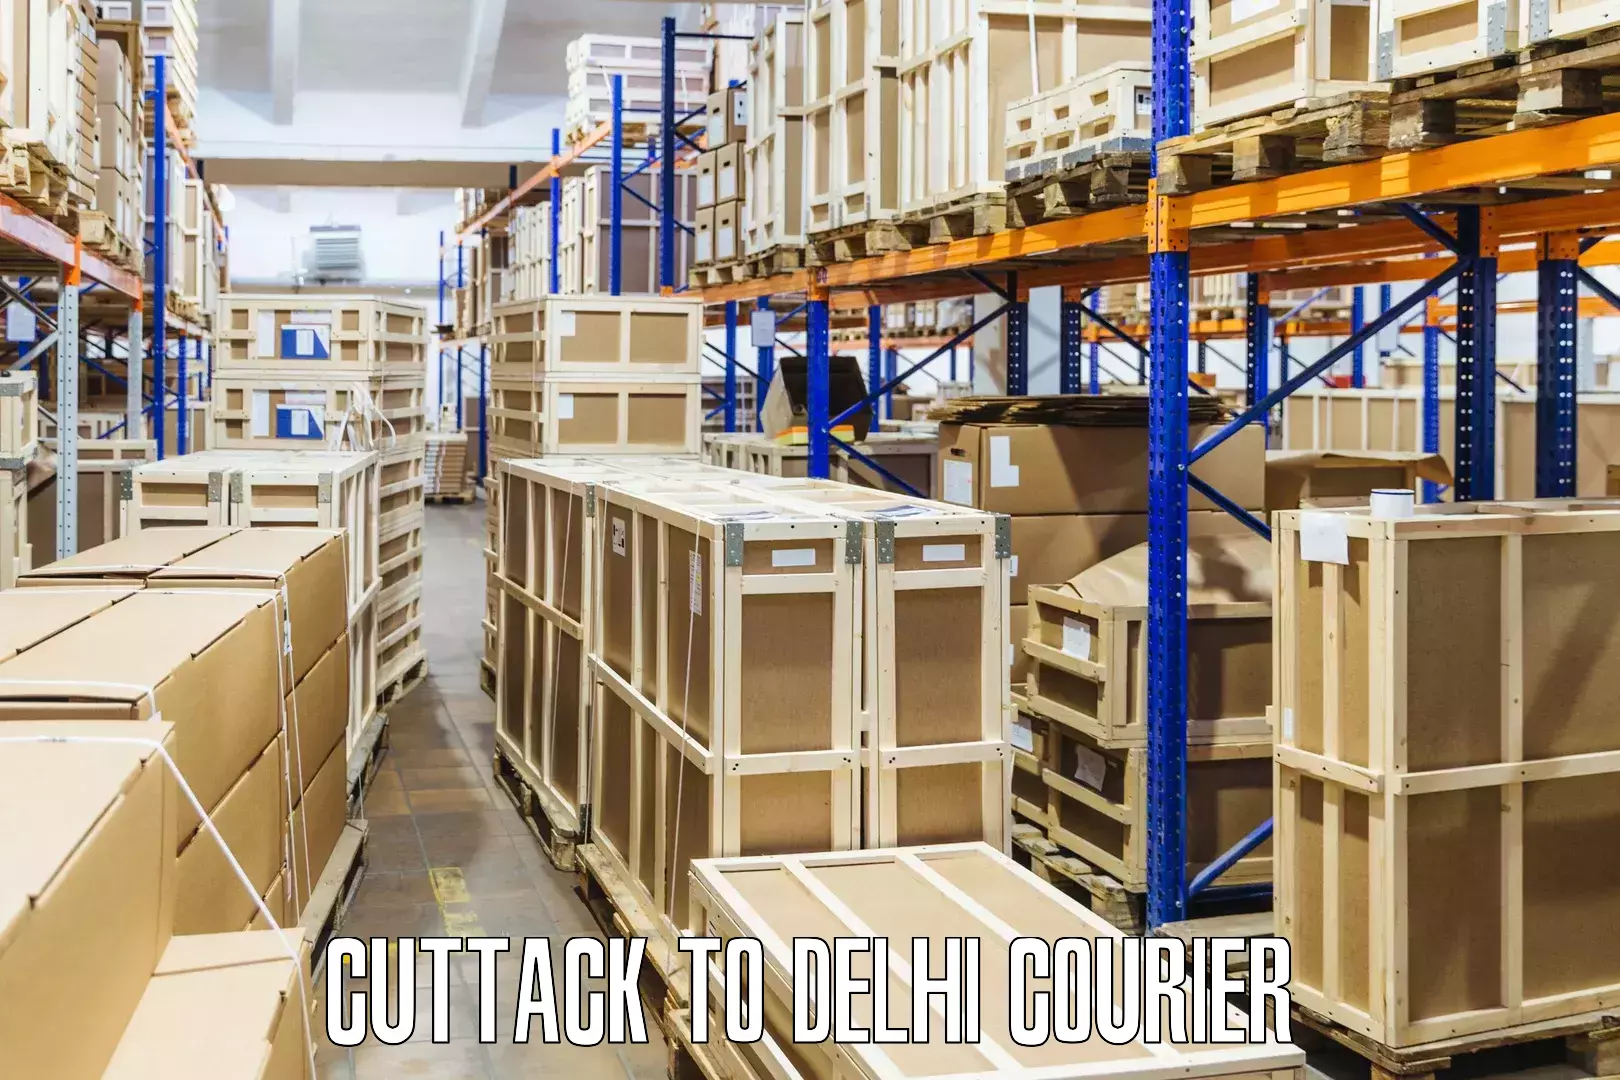 Advanced shipping technology Cuttack to Kalkaji